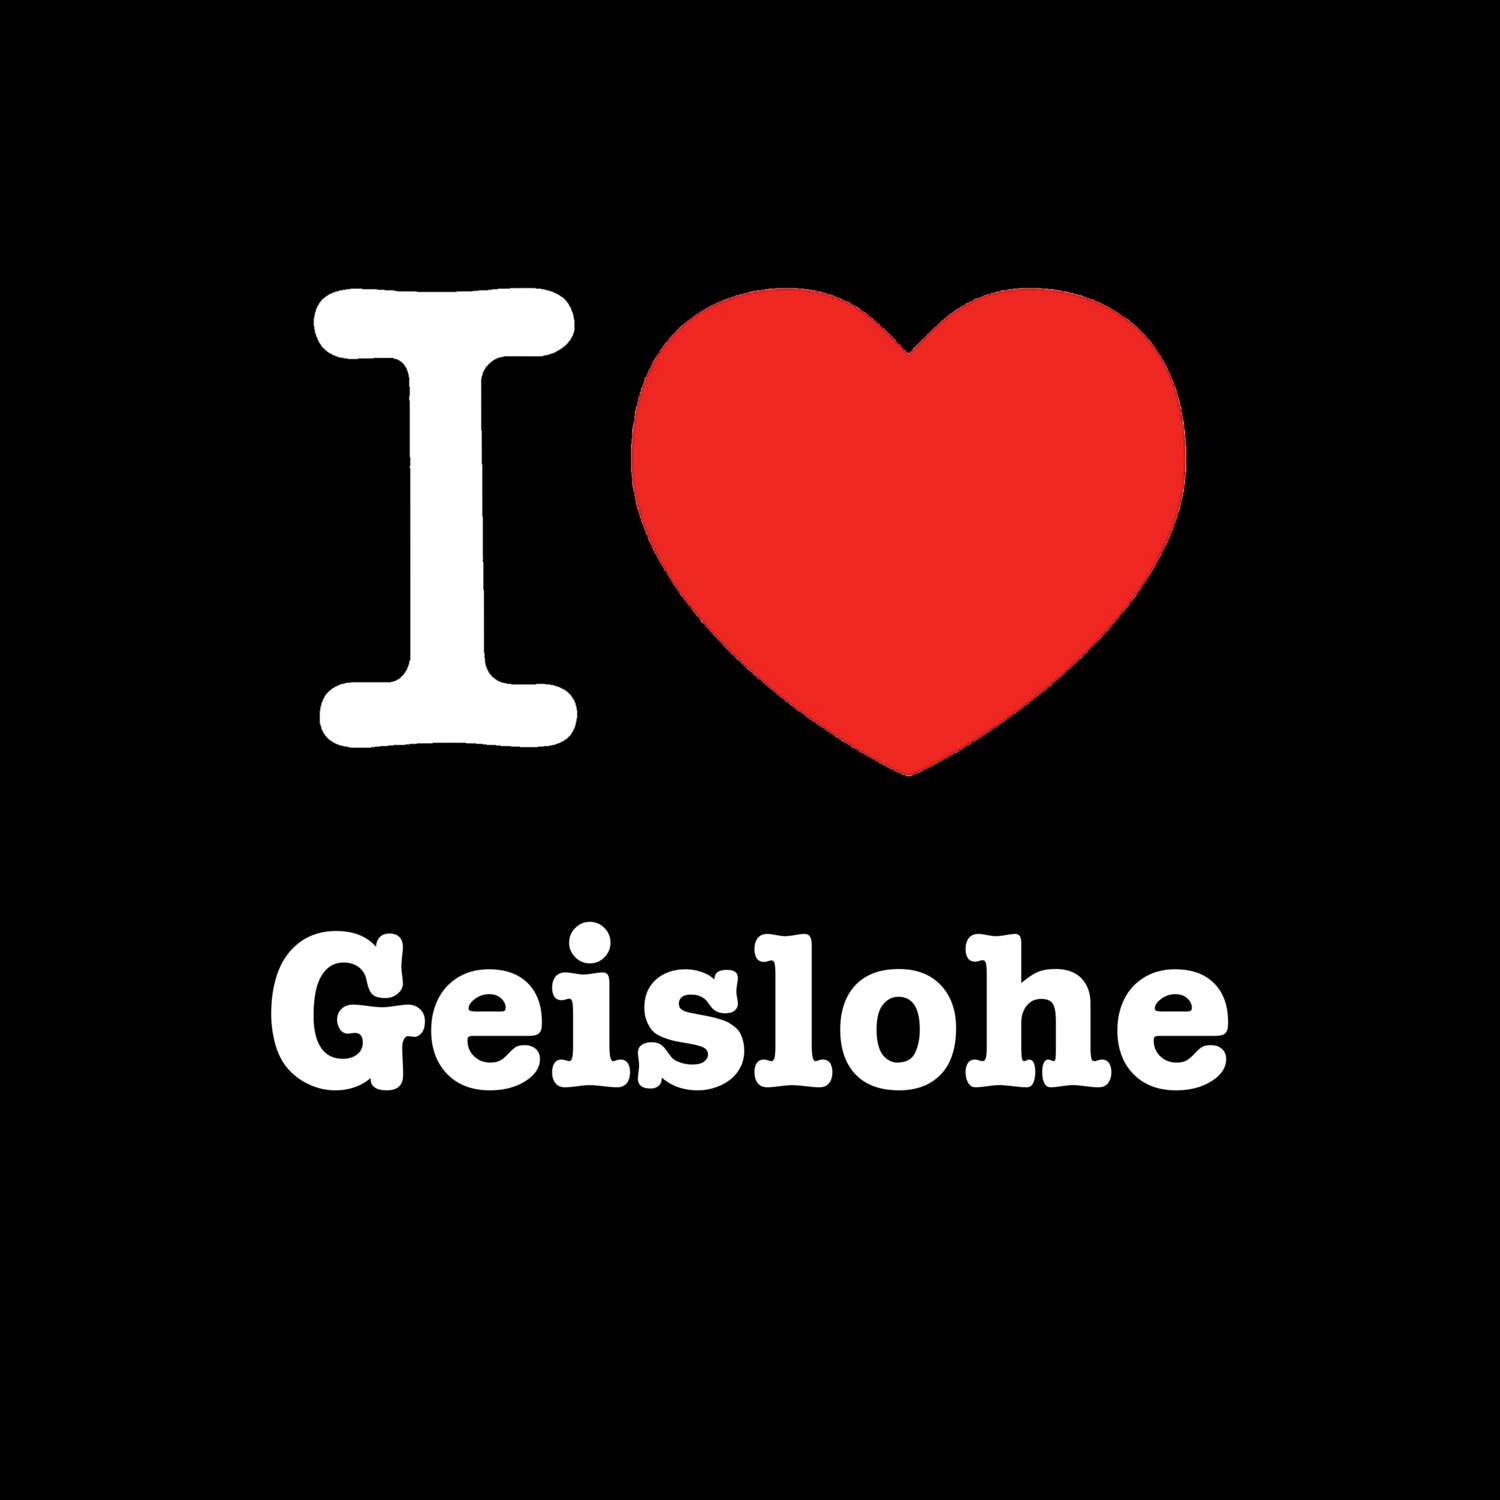 Geislohe T-Shirt »I love«